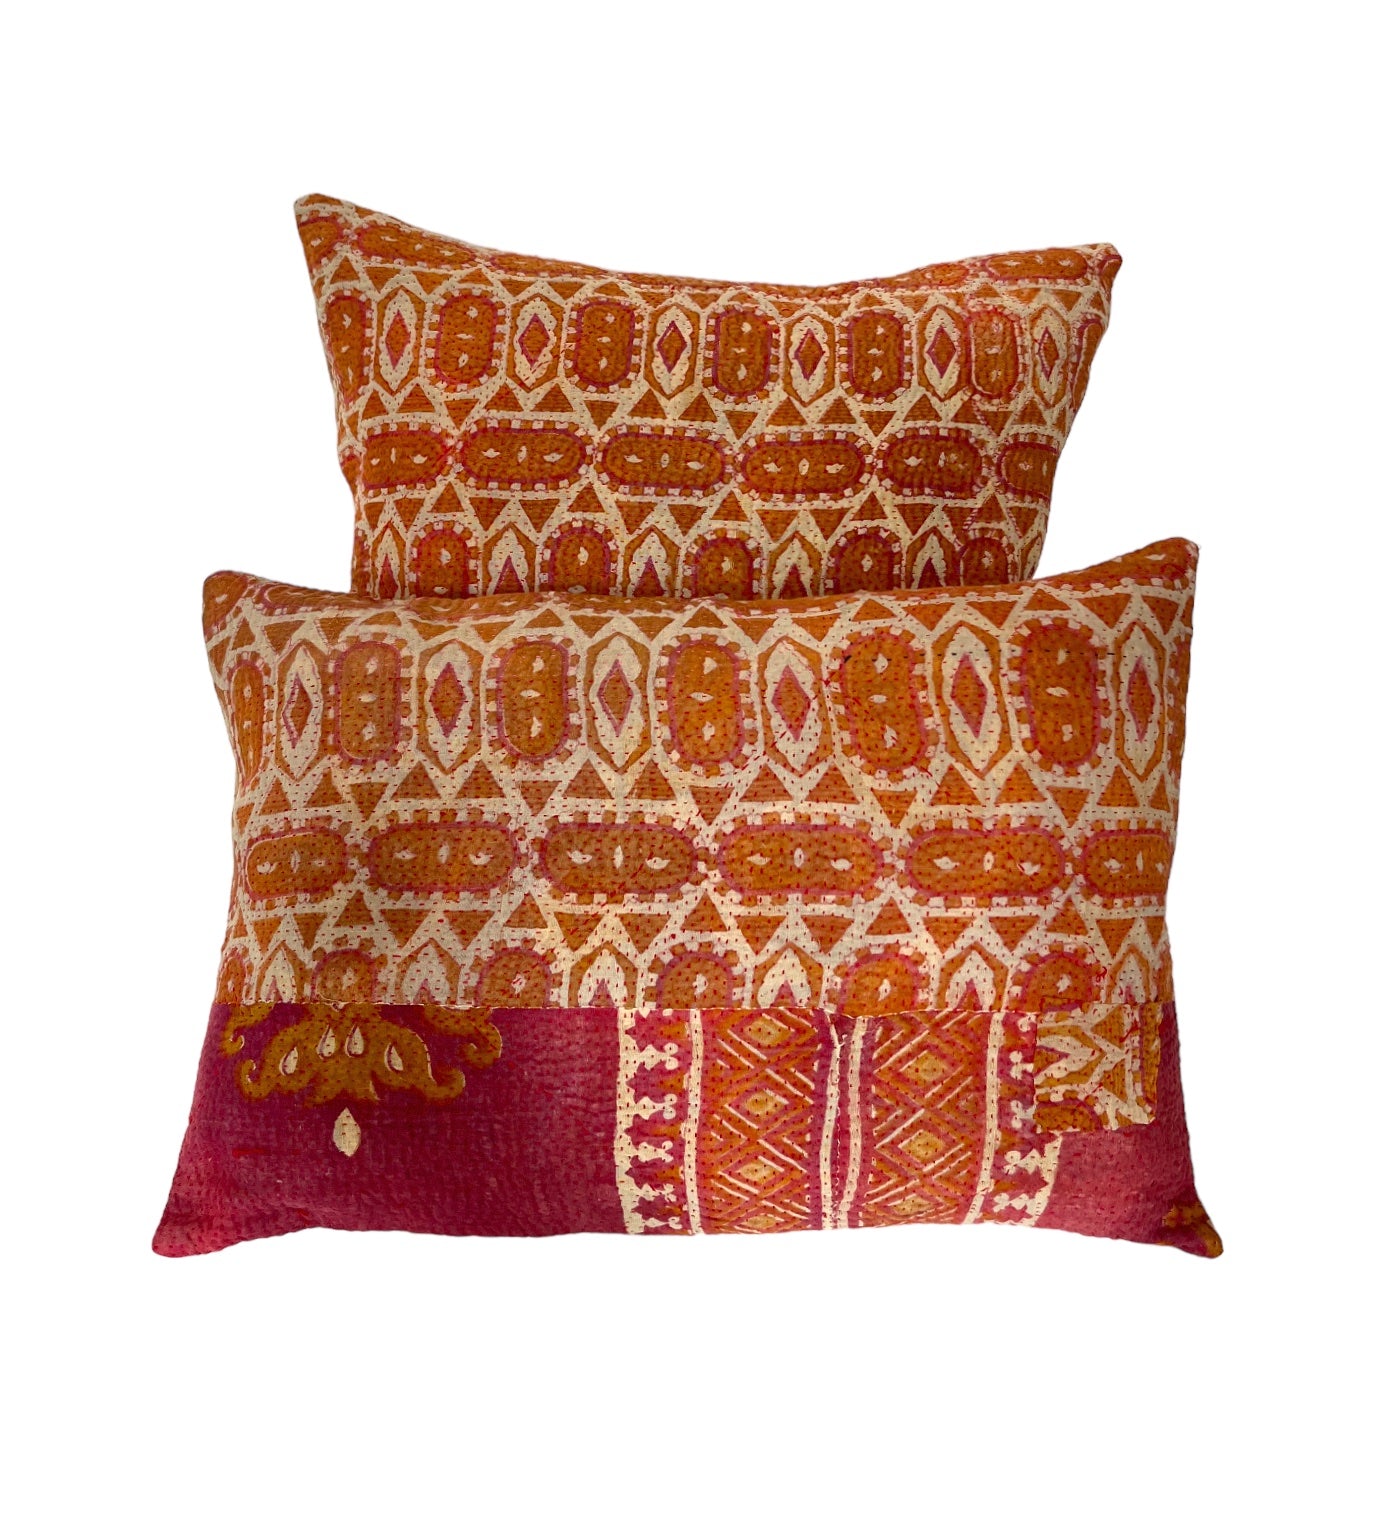 Pink and orange kantha cushions